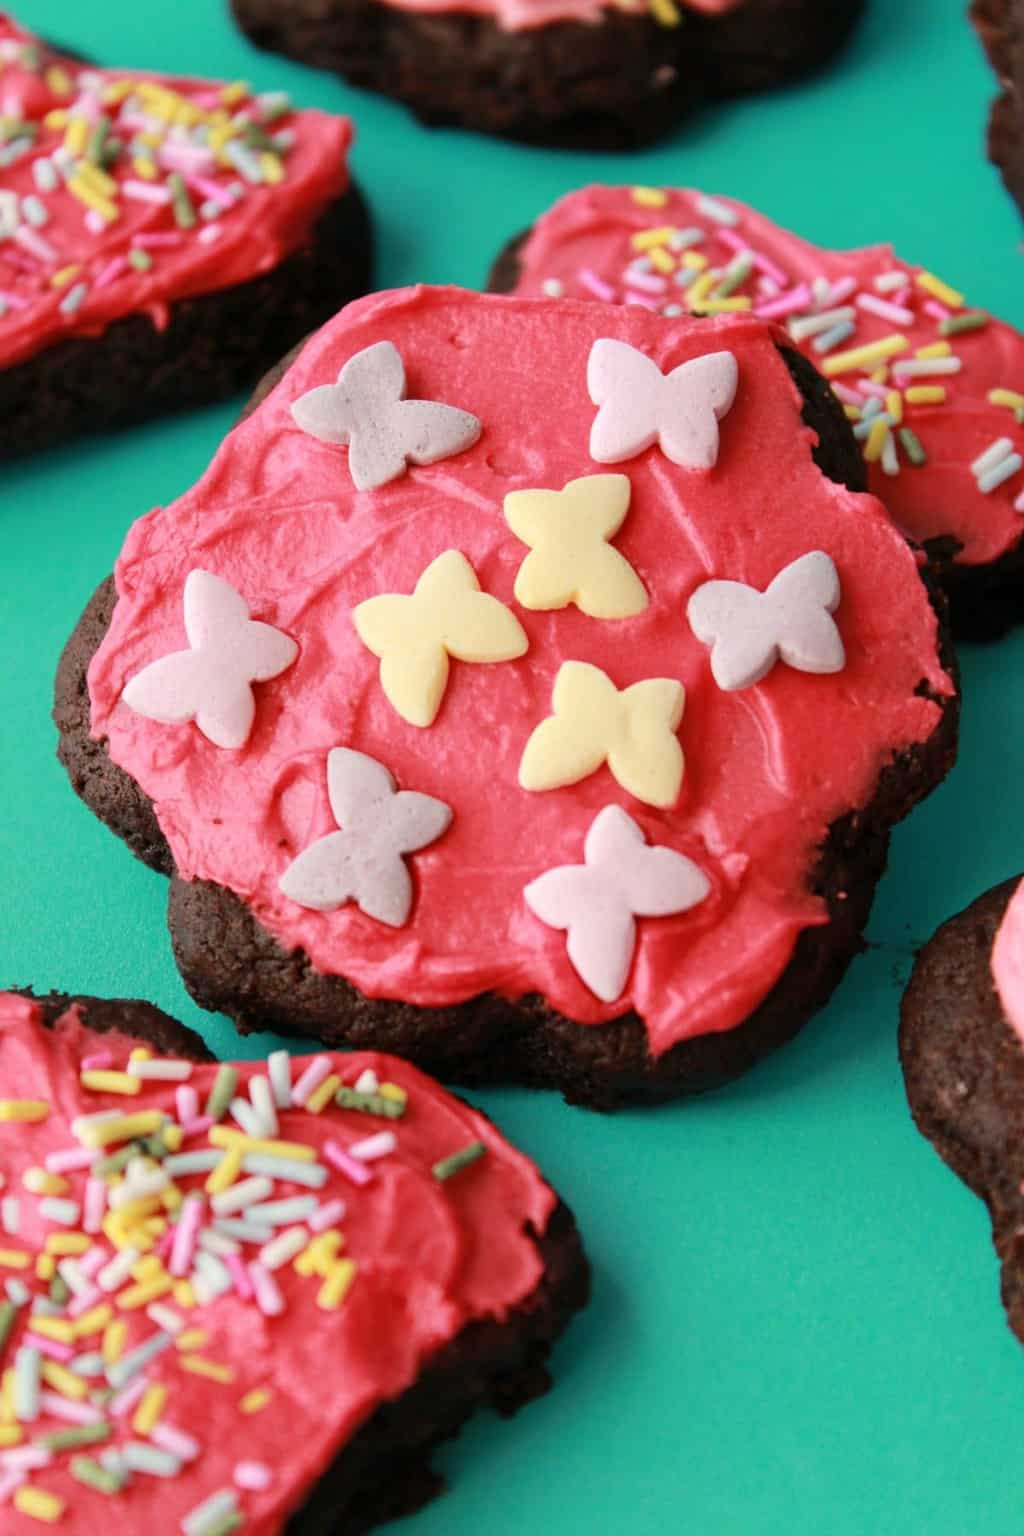 Vegan chocolate sugar cookies with pink frosting and sprinkles. 